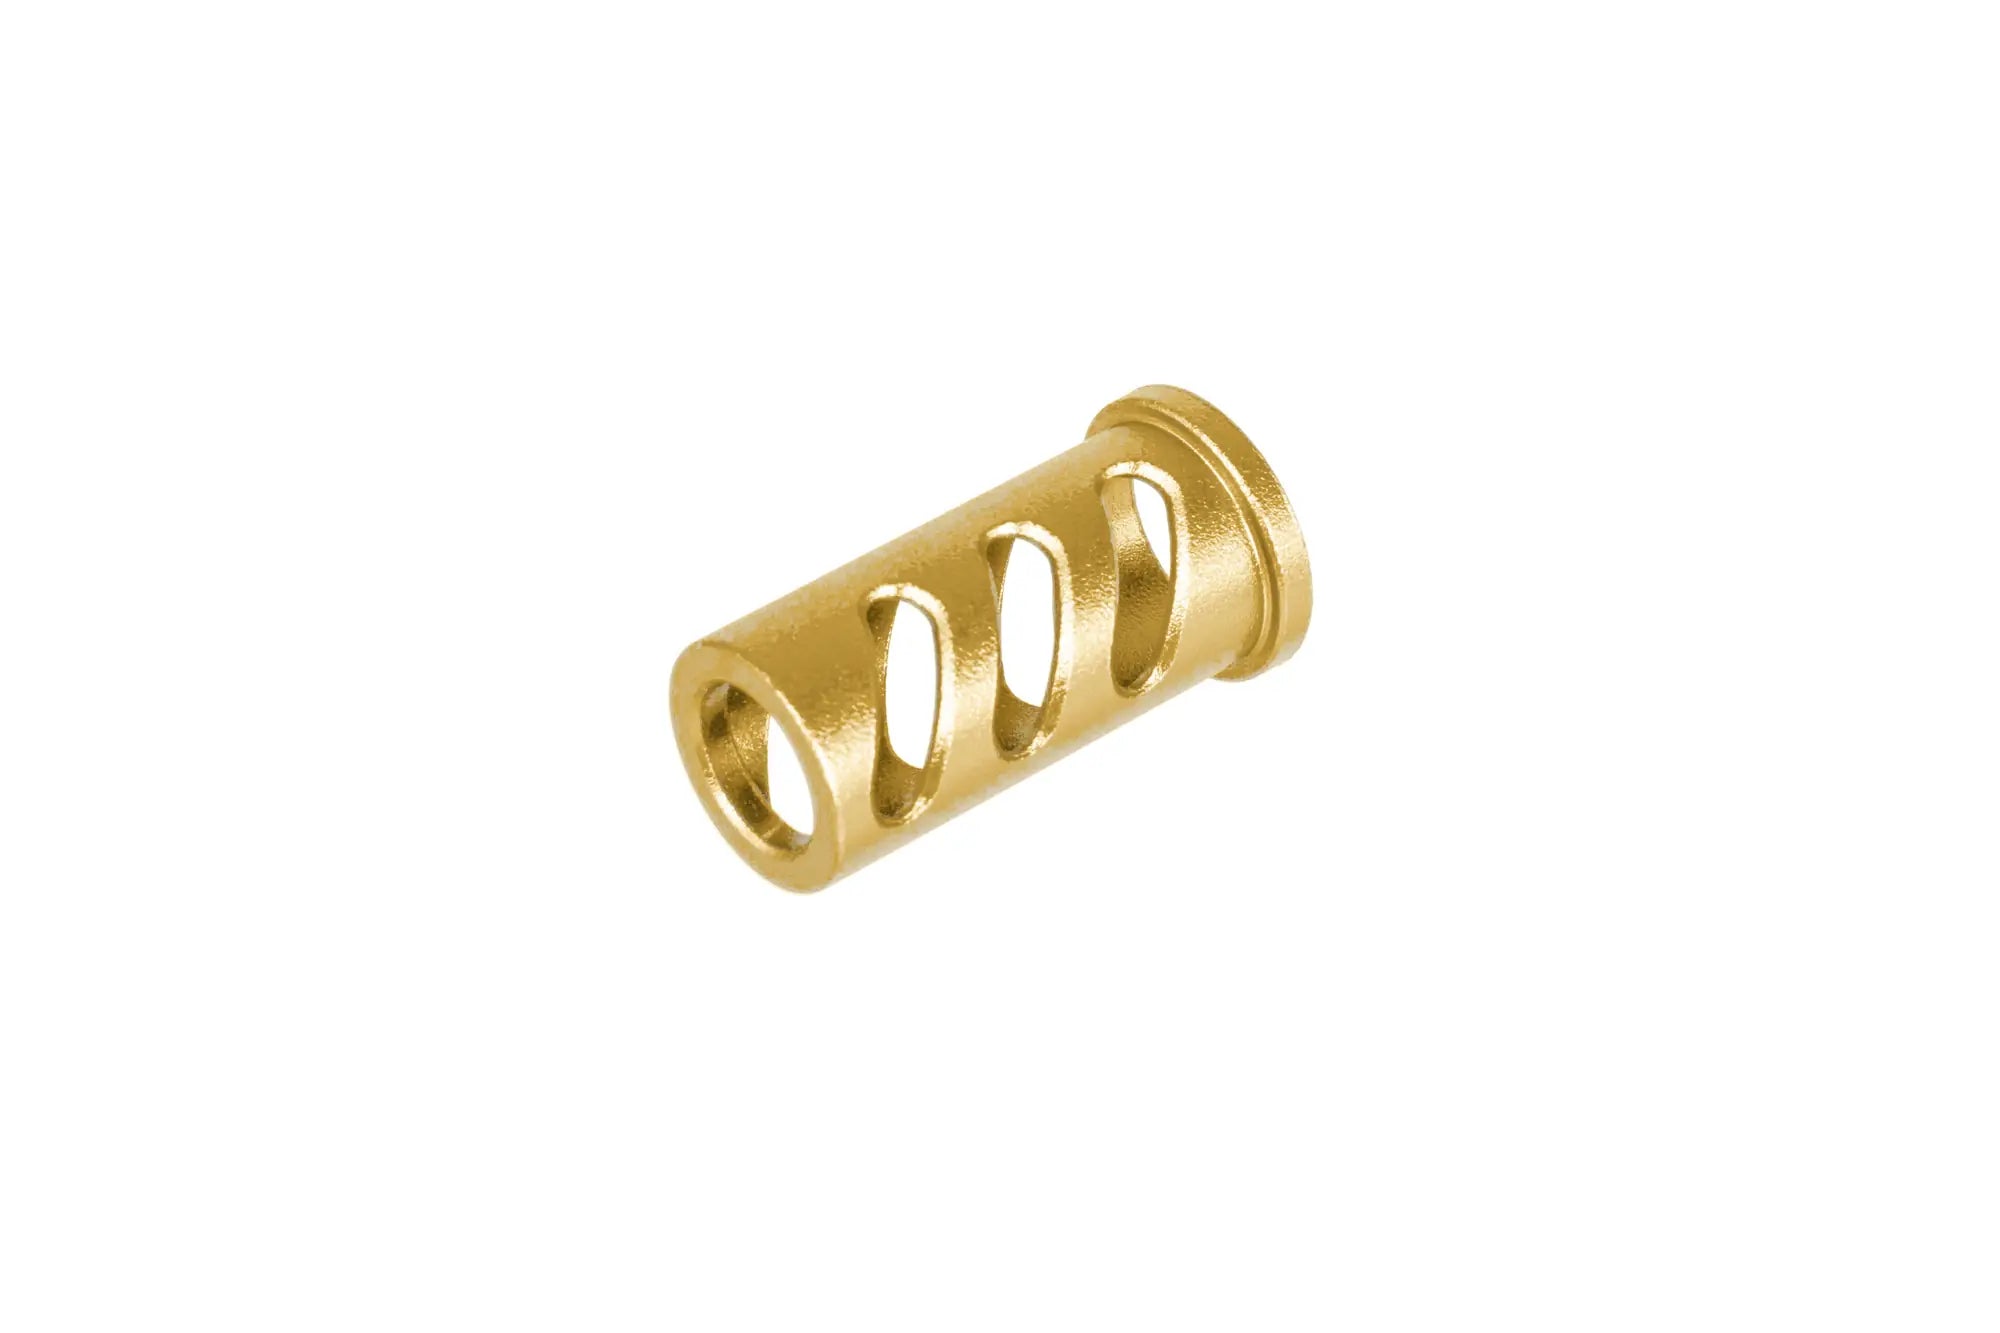 LA Capa Customs CUTOUT lock guide cap for TM Hi-Capa 4.3 replicas (with Delrin ring) Gold-1